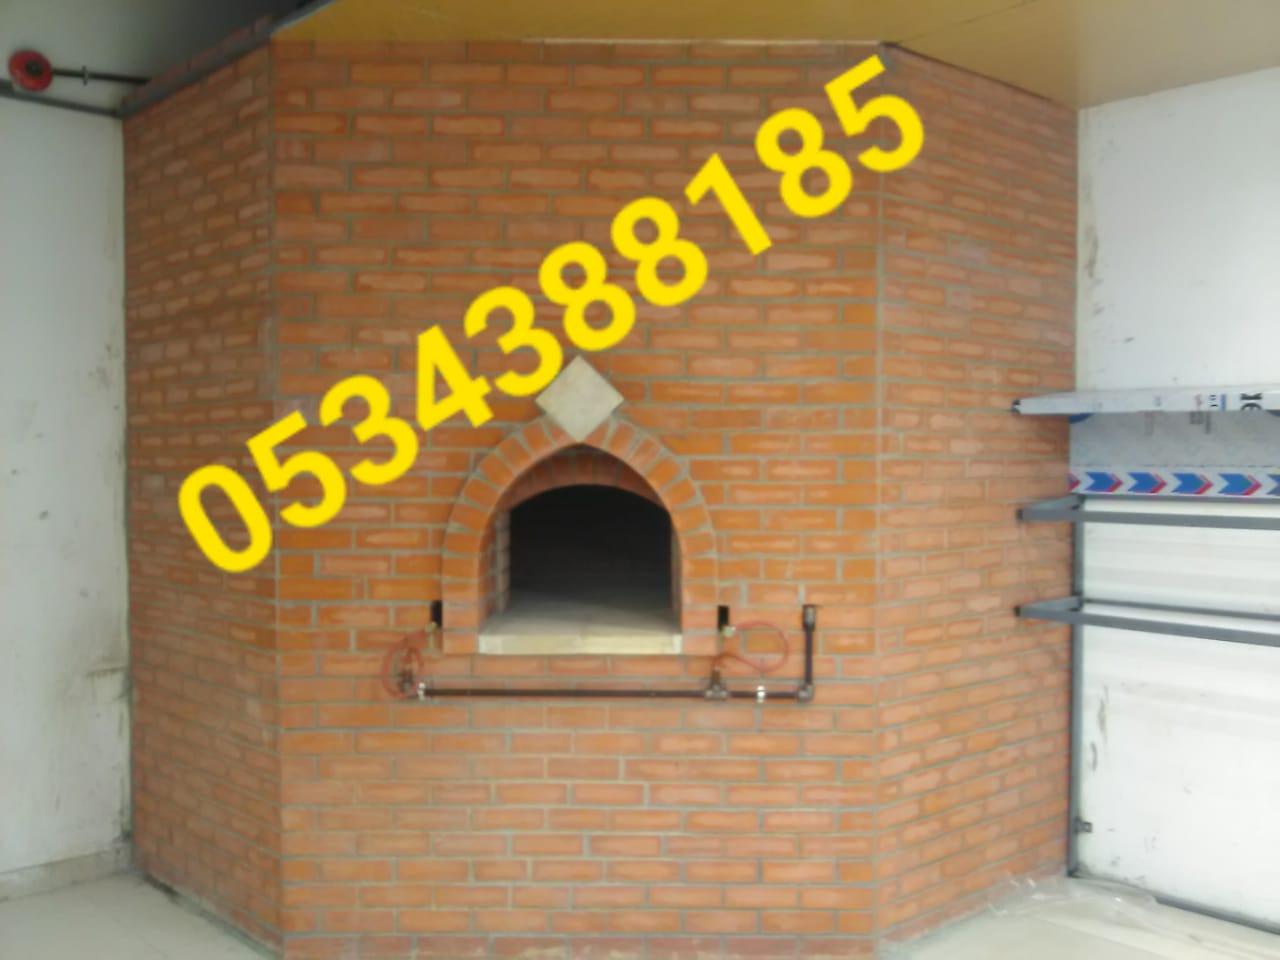 بناء افران بيتزا , افران خبز , فرن مطاعم 0534388185 P_1103ovfgf8